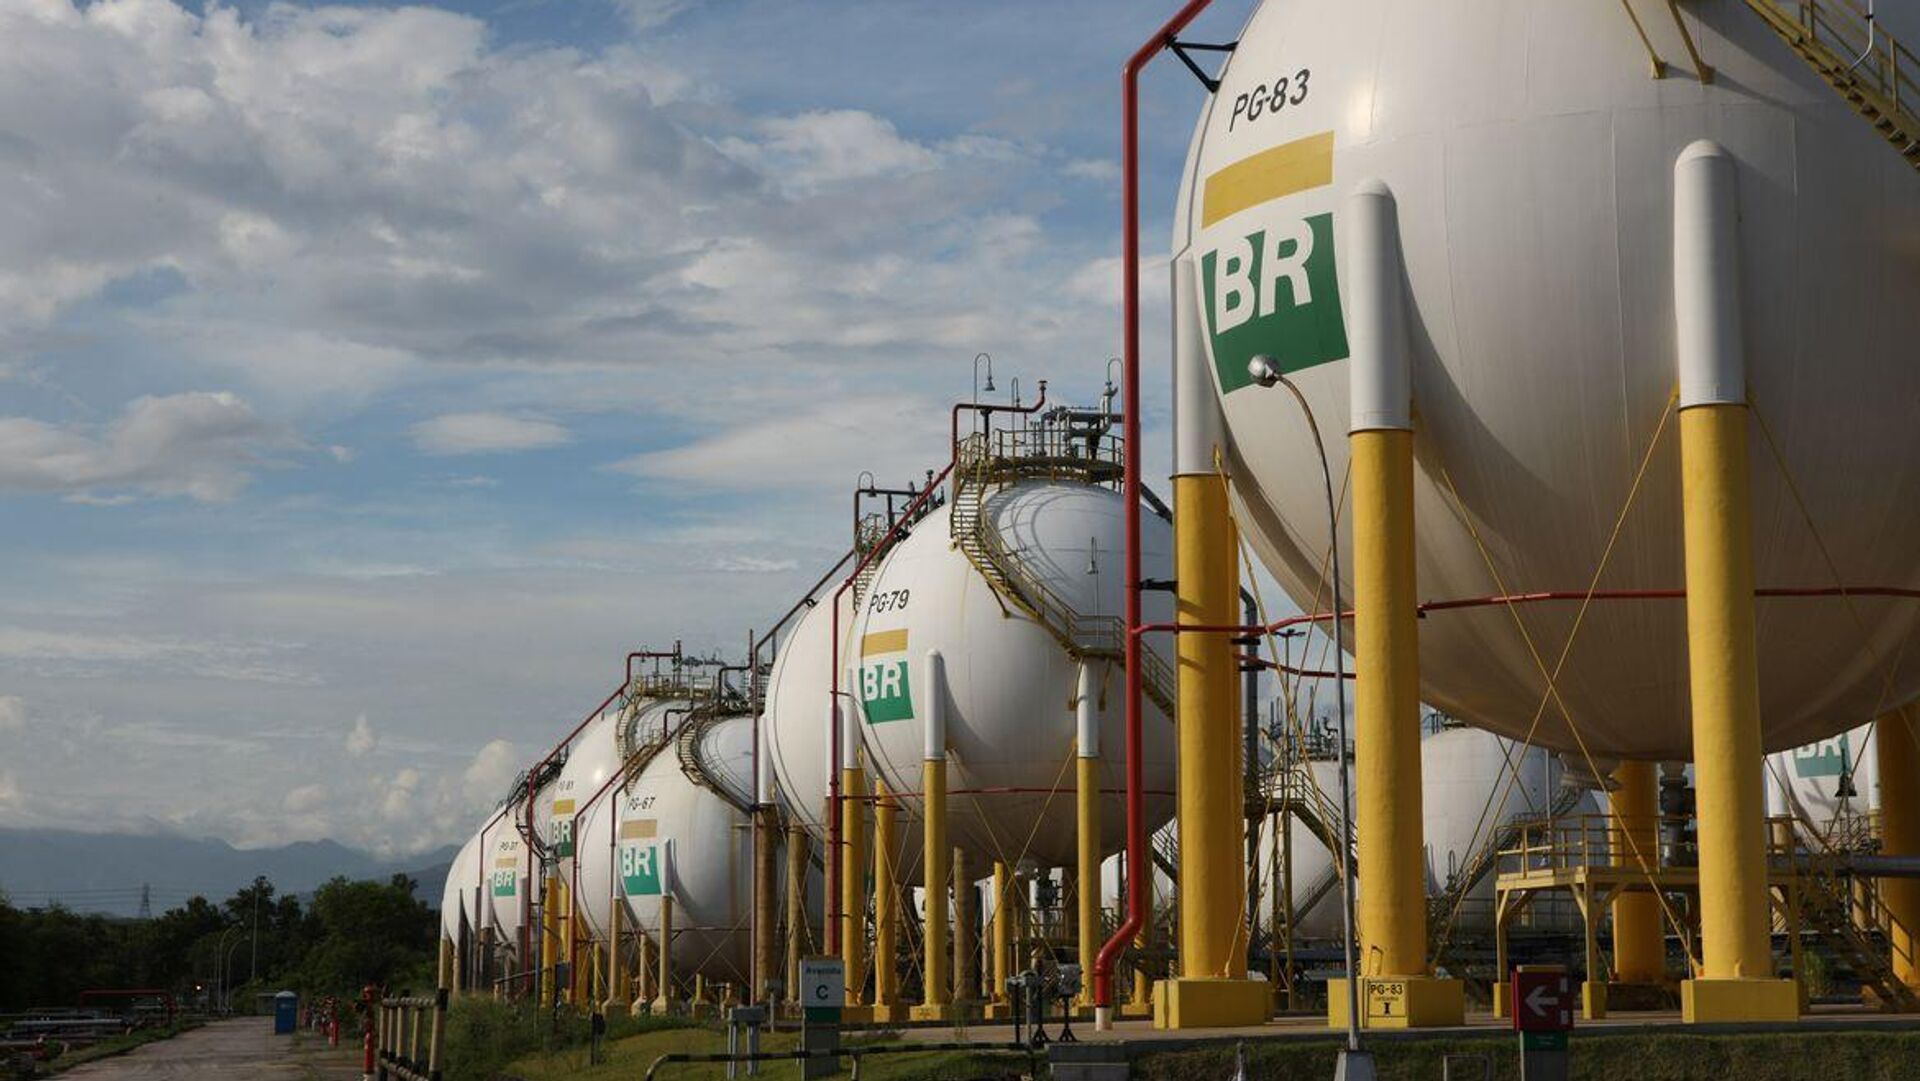 Esferas de armazenamento de gás liquefeito de petróleo (GLP) da Refinaria Duque de Caxias (Reduc), da Petrobras. Duque de Caxias (RJ), 20 de março de 2013 - Sputnik Brasil, 1920, 02.02.2024